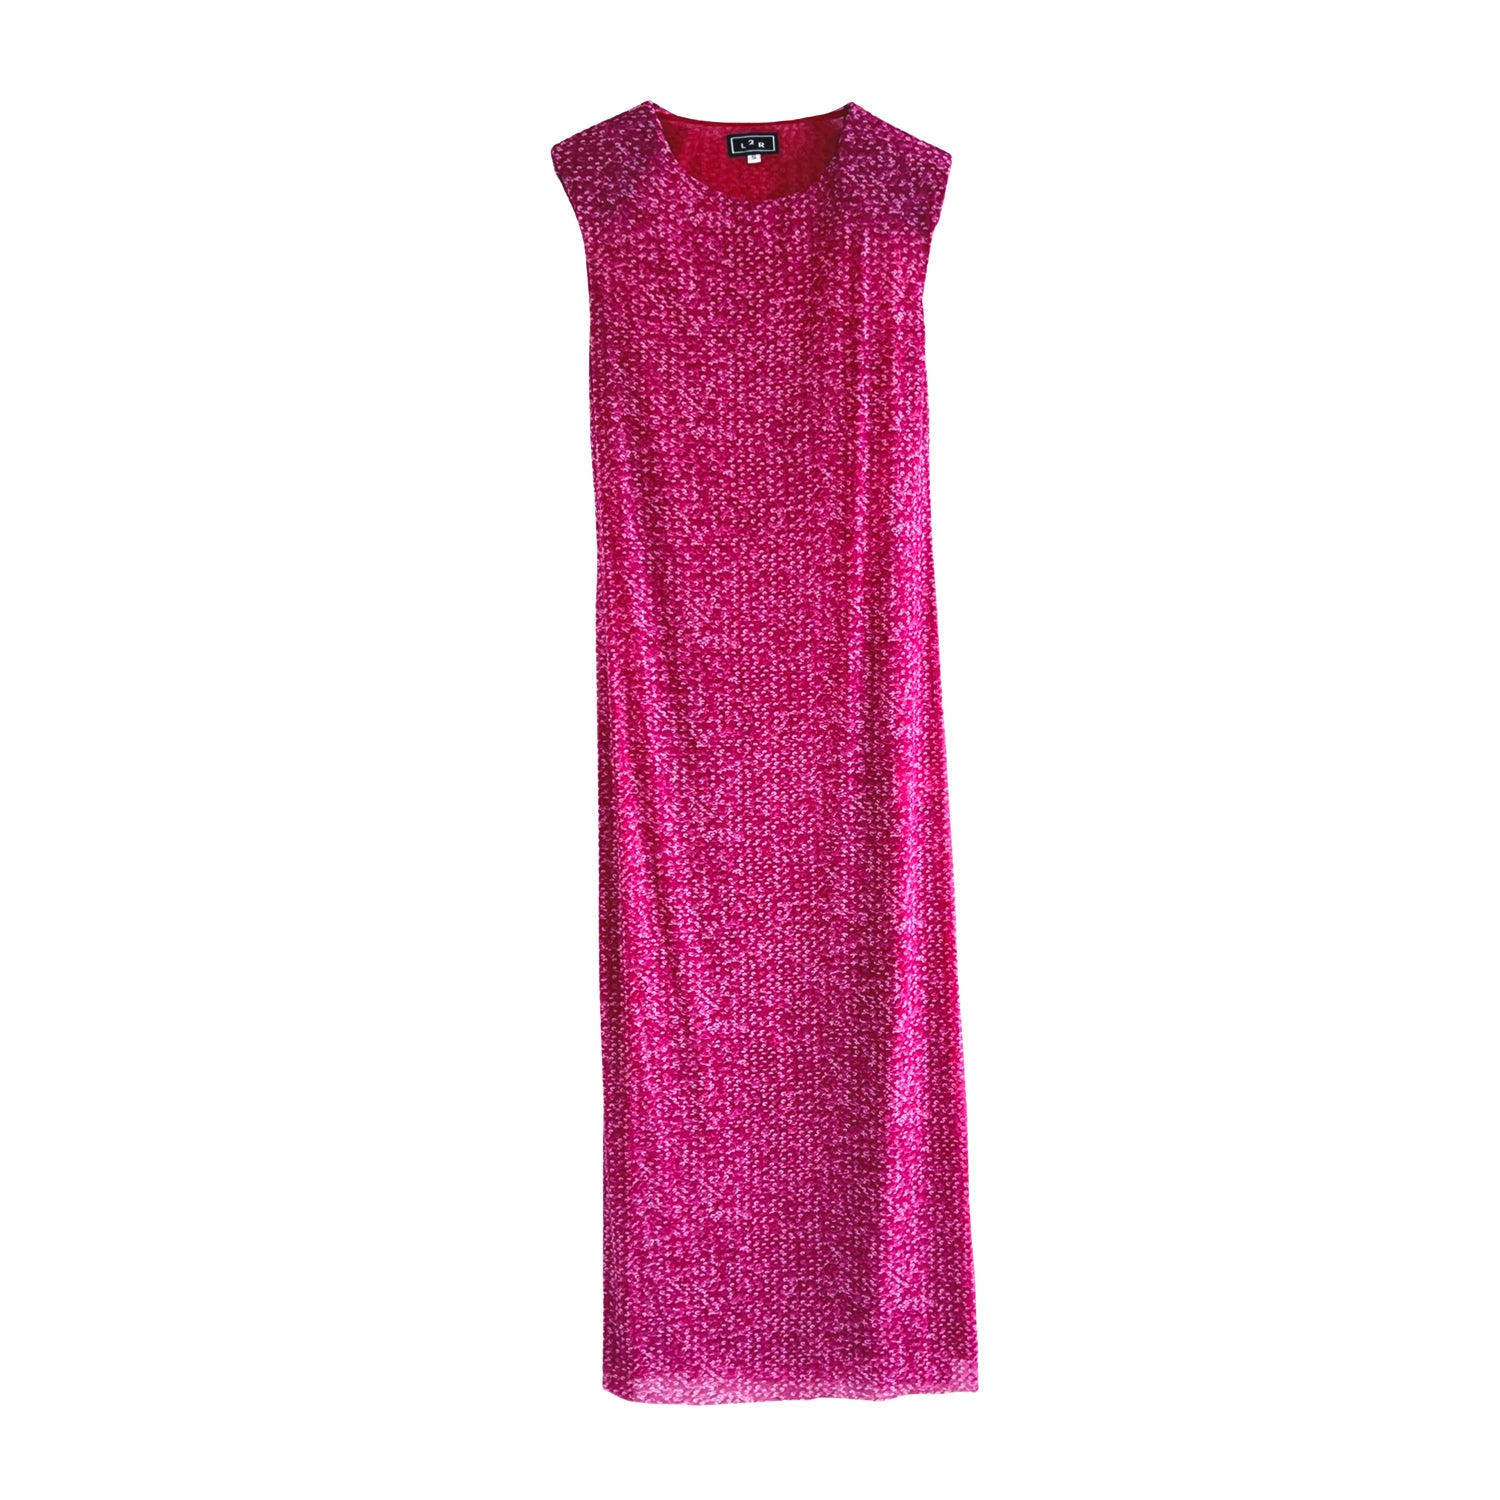 Shoulder Pad Printed Mesh Dress in Hot Pink